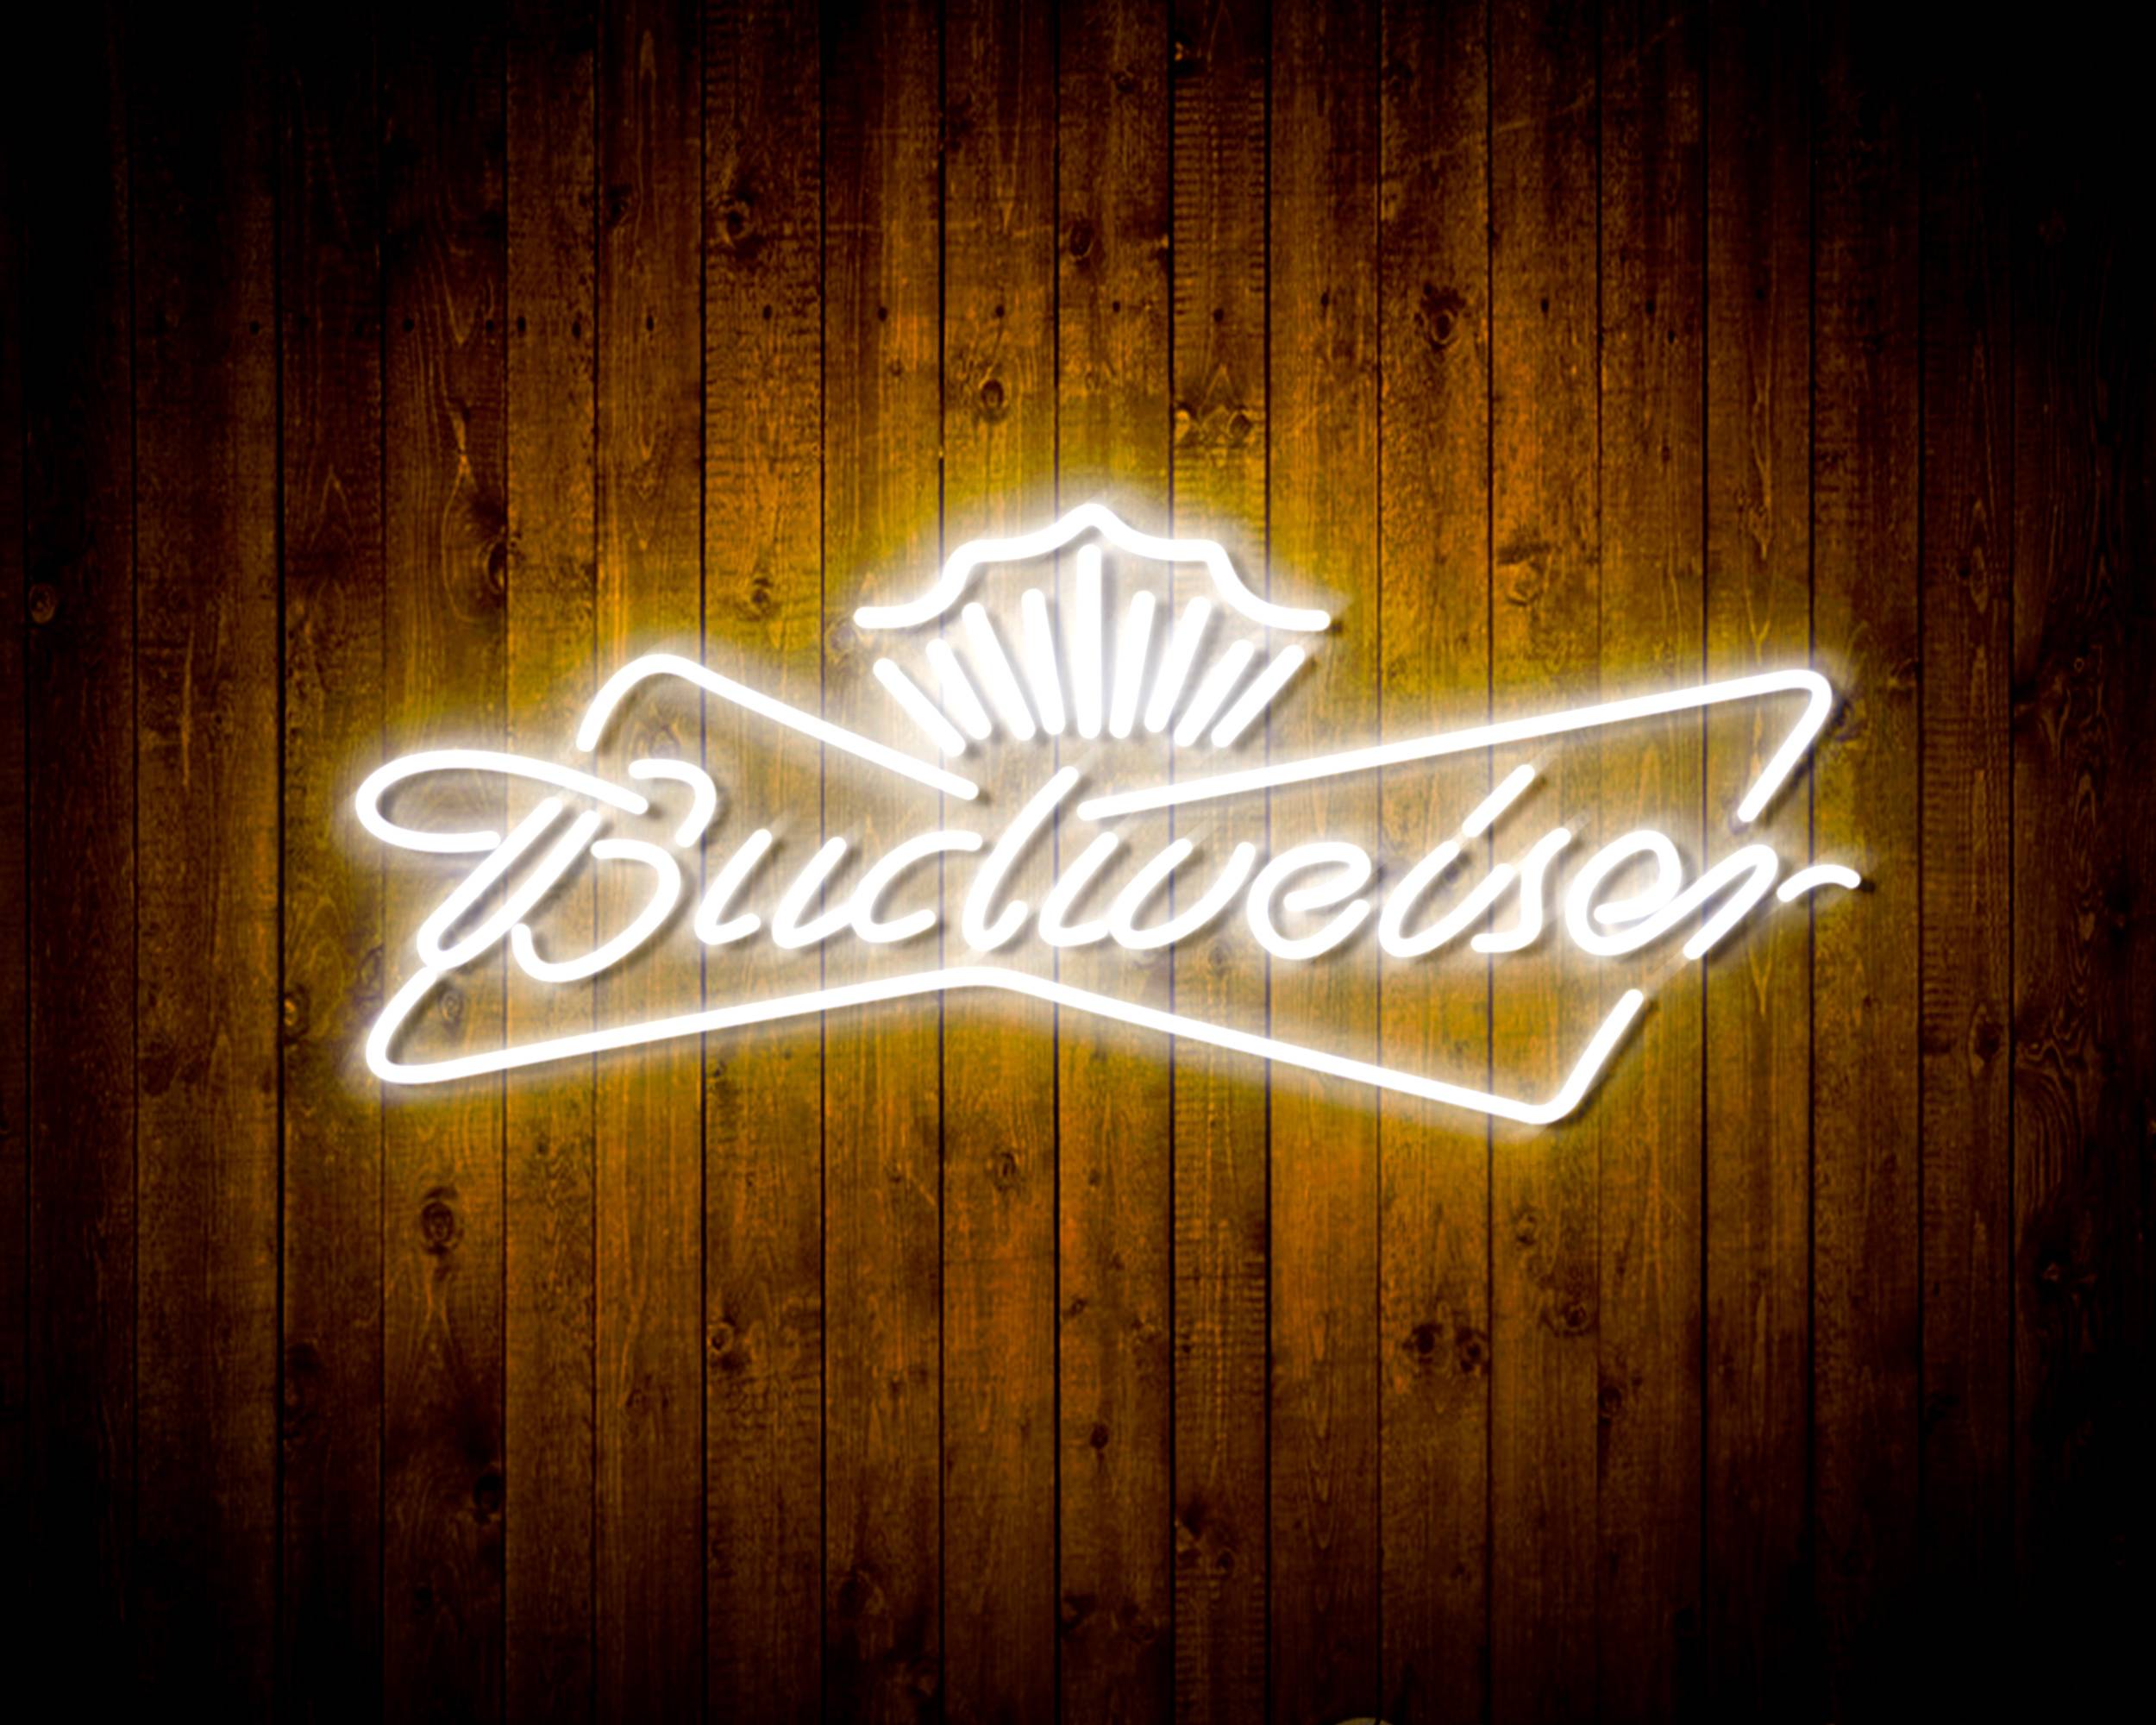 Budweiser 4 Handmade LED Neon Light Sign